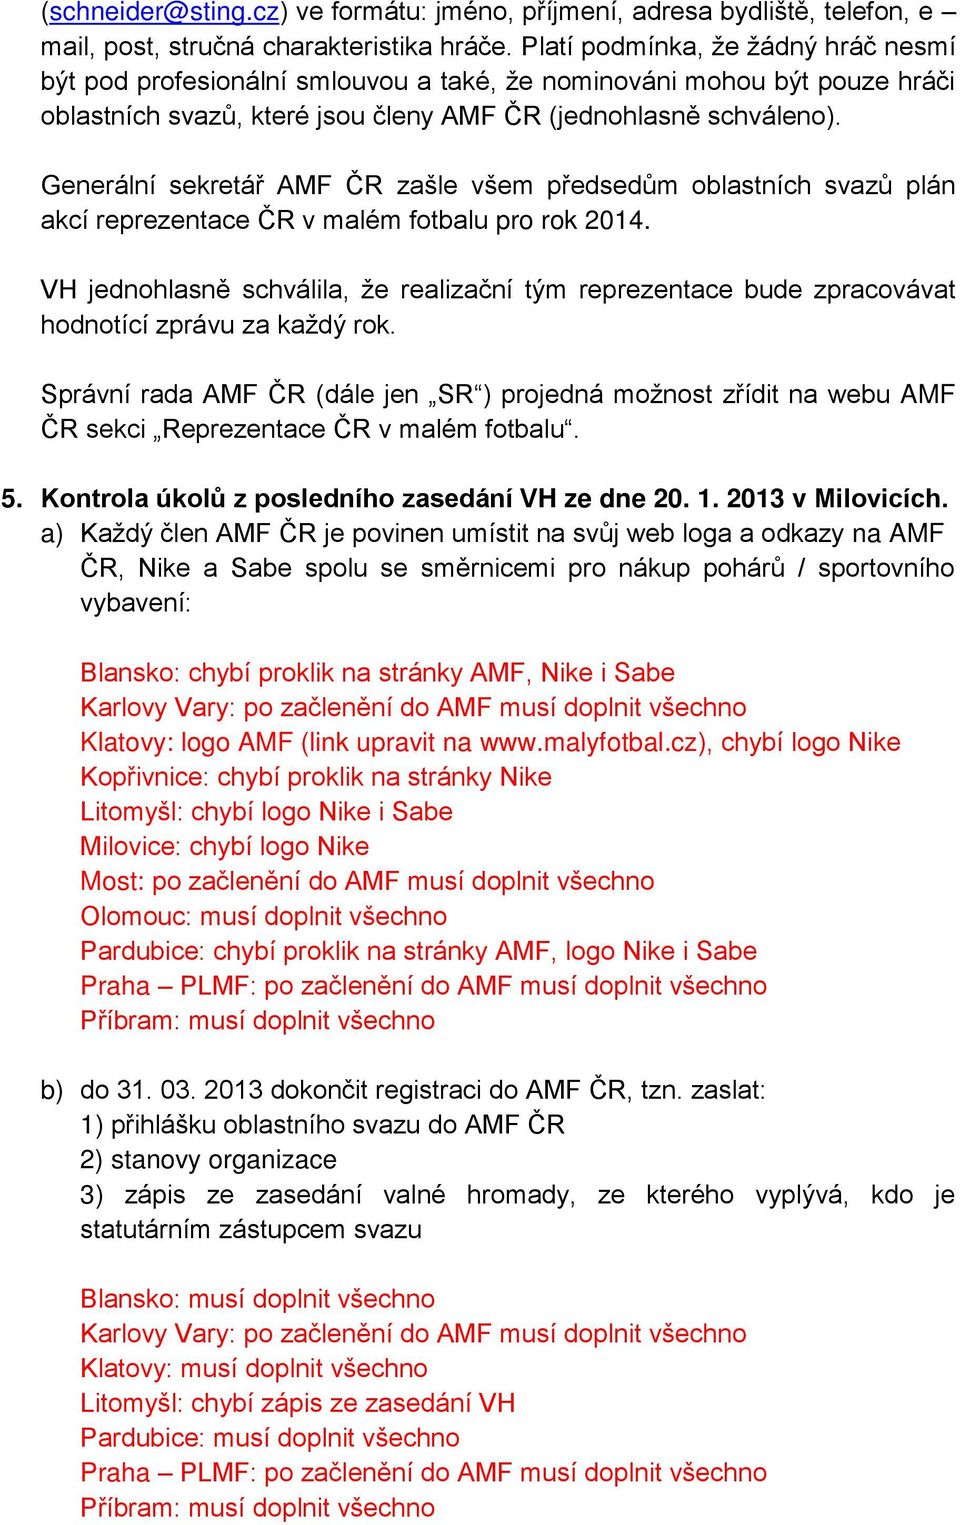 Generální sekretář AMF ČR zašle všem předsedům oblastních svazů plán akcí reprezentace ČR v malém fotbalu pro rok 2014.